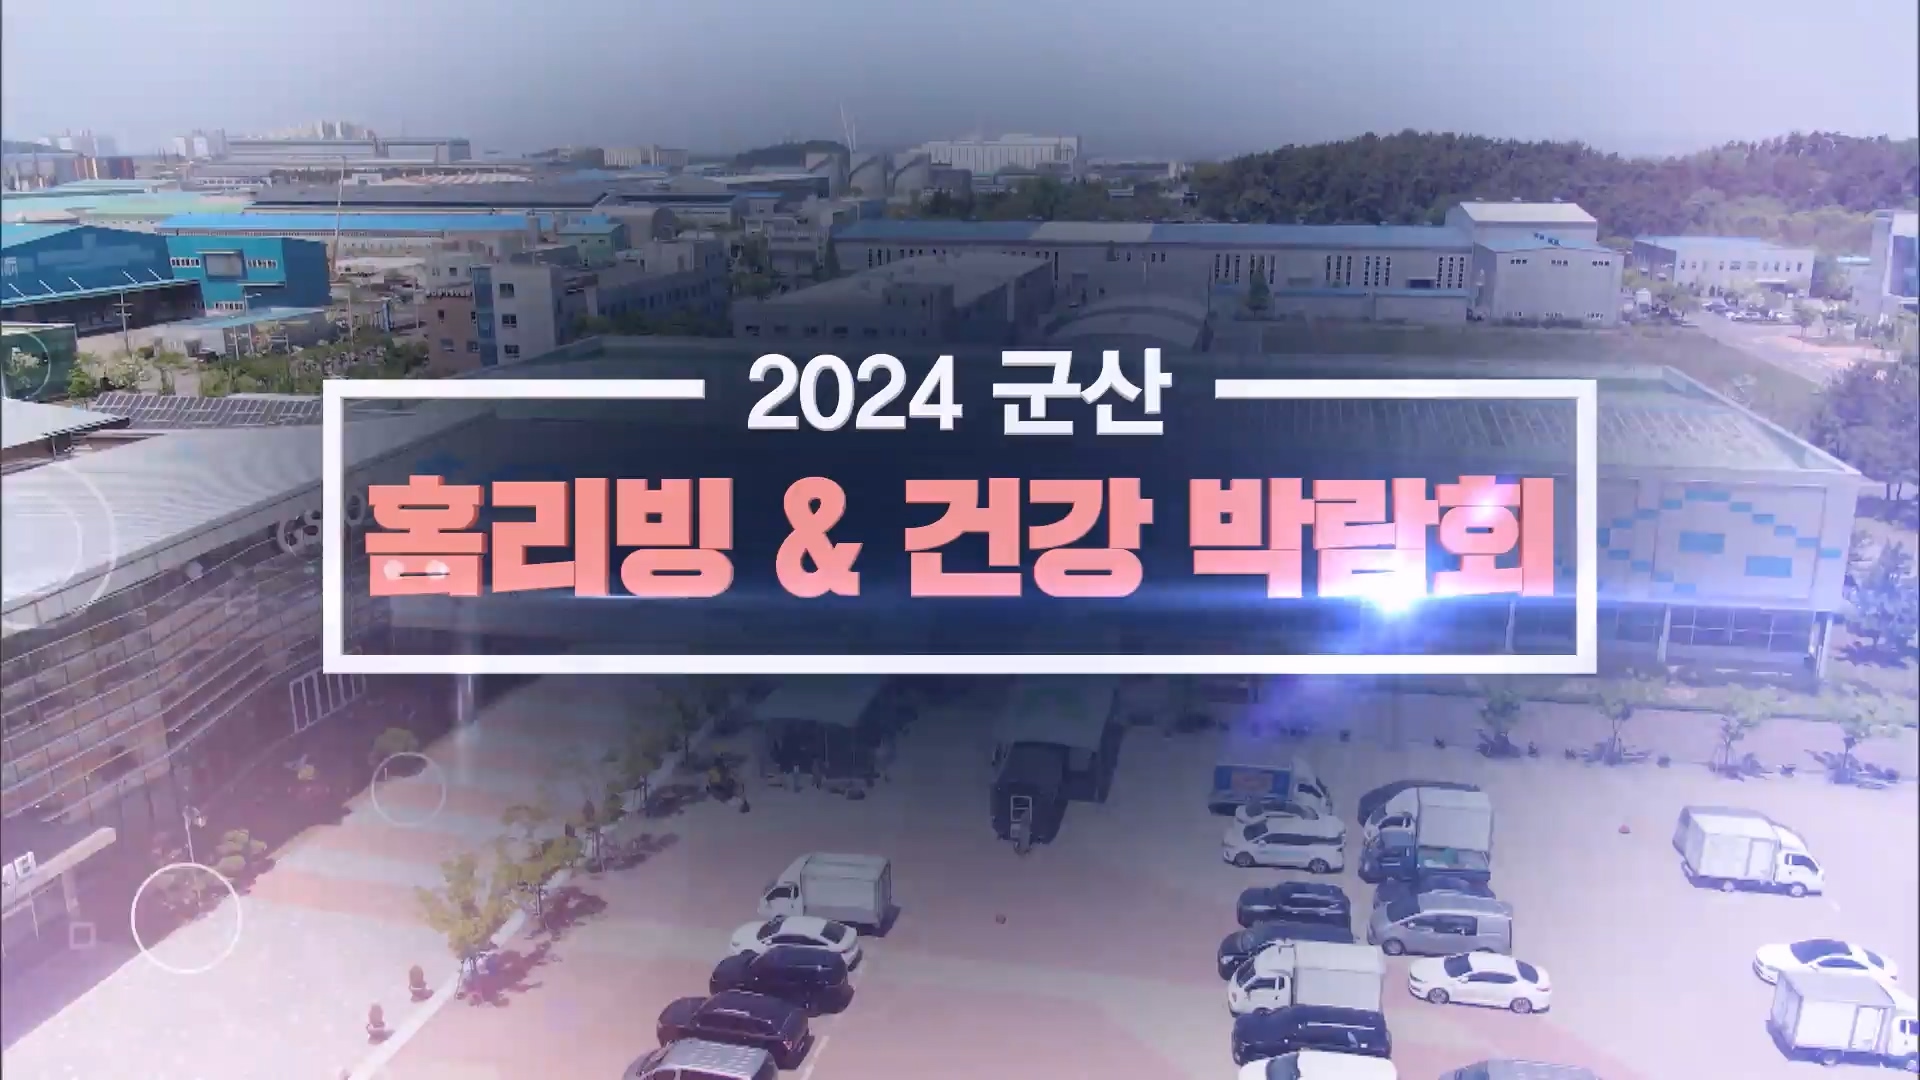 2024 군산 - 홈리빙 & 건강 박람회